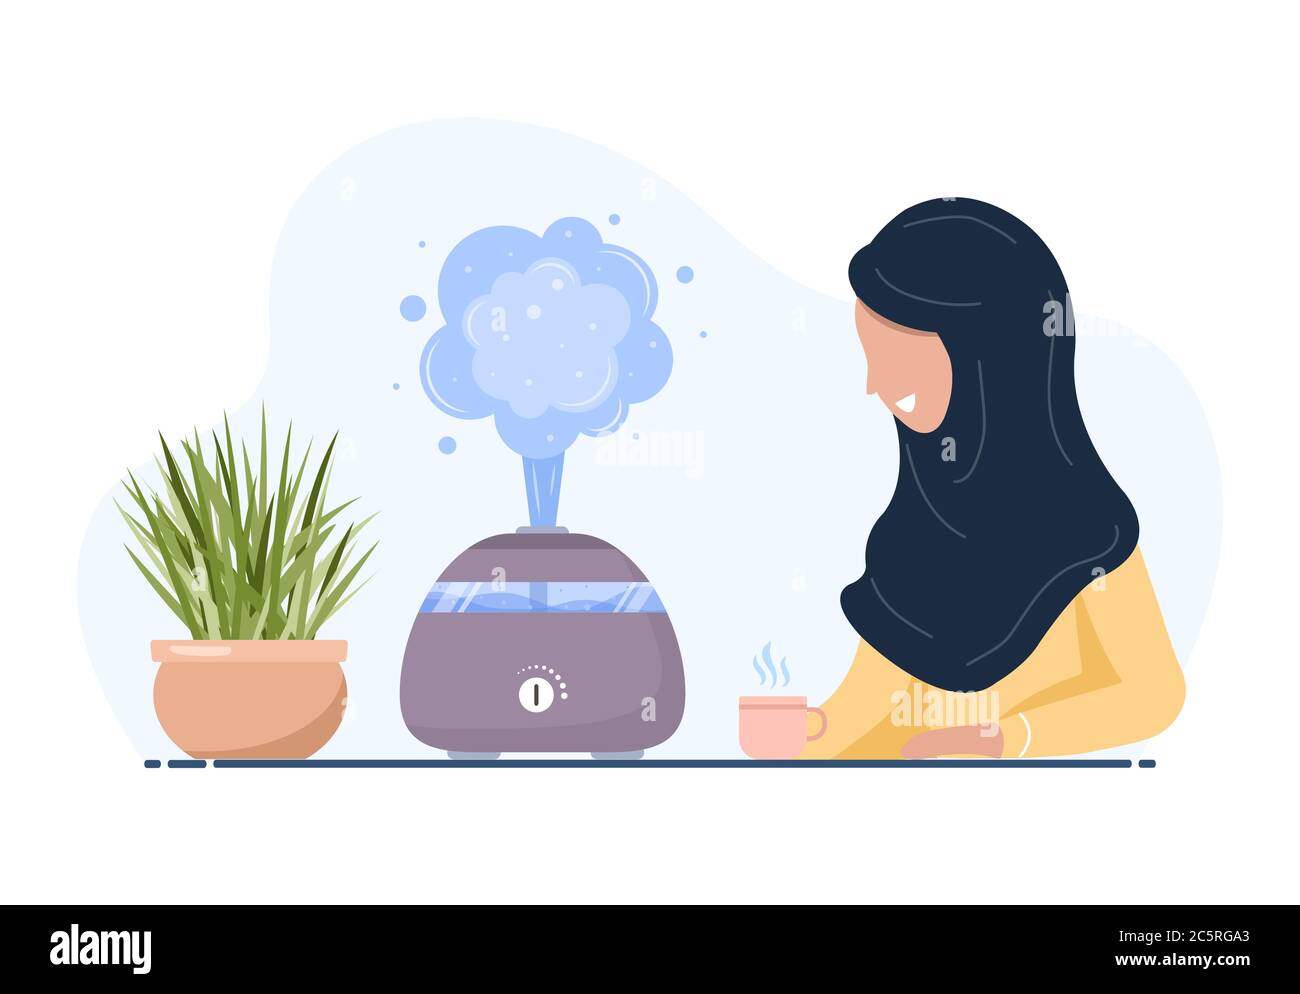 Ultraschall-Luftbefeuchter mit Haustüften. Die arabische Frau genießt die frische feuchte Luft zu Hause. Haushaltsgeräte für einen gesunden Lebensstil. Moderner Vektor Stock Vektor